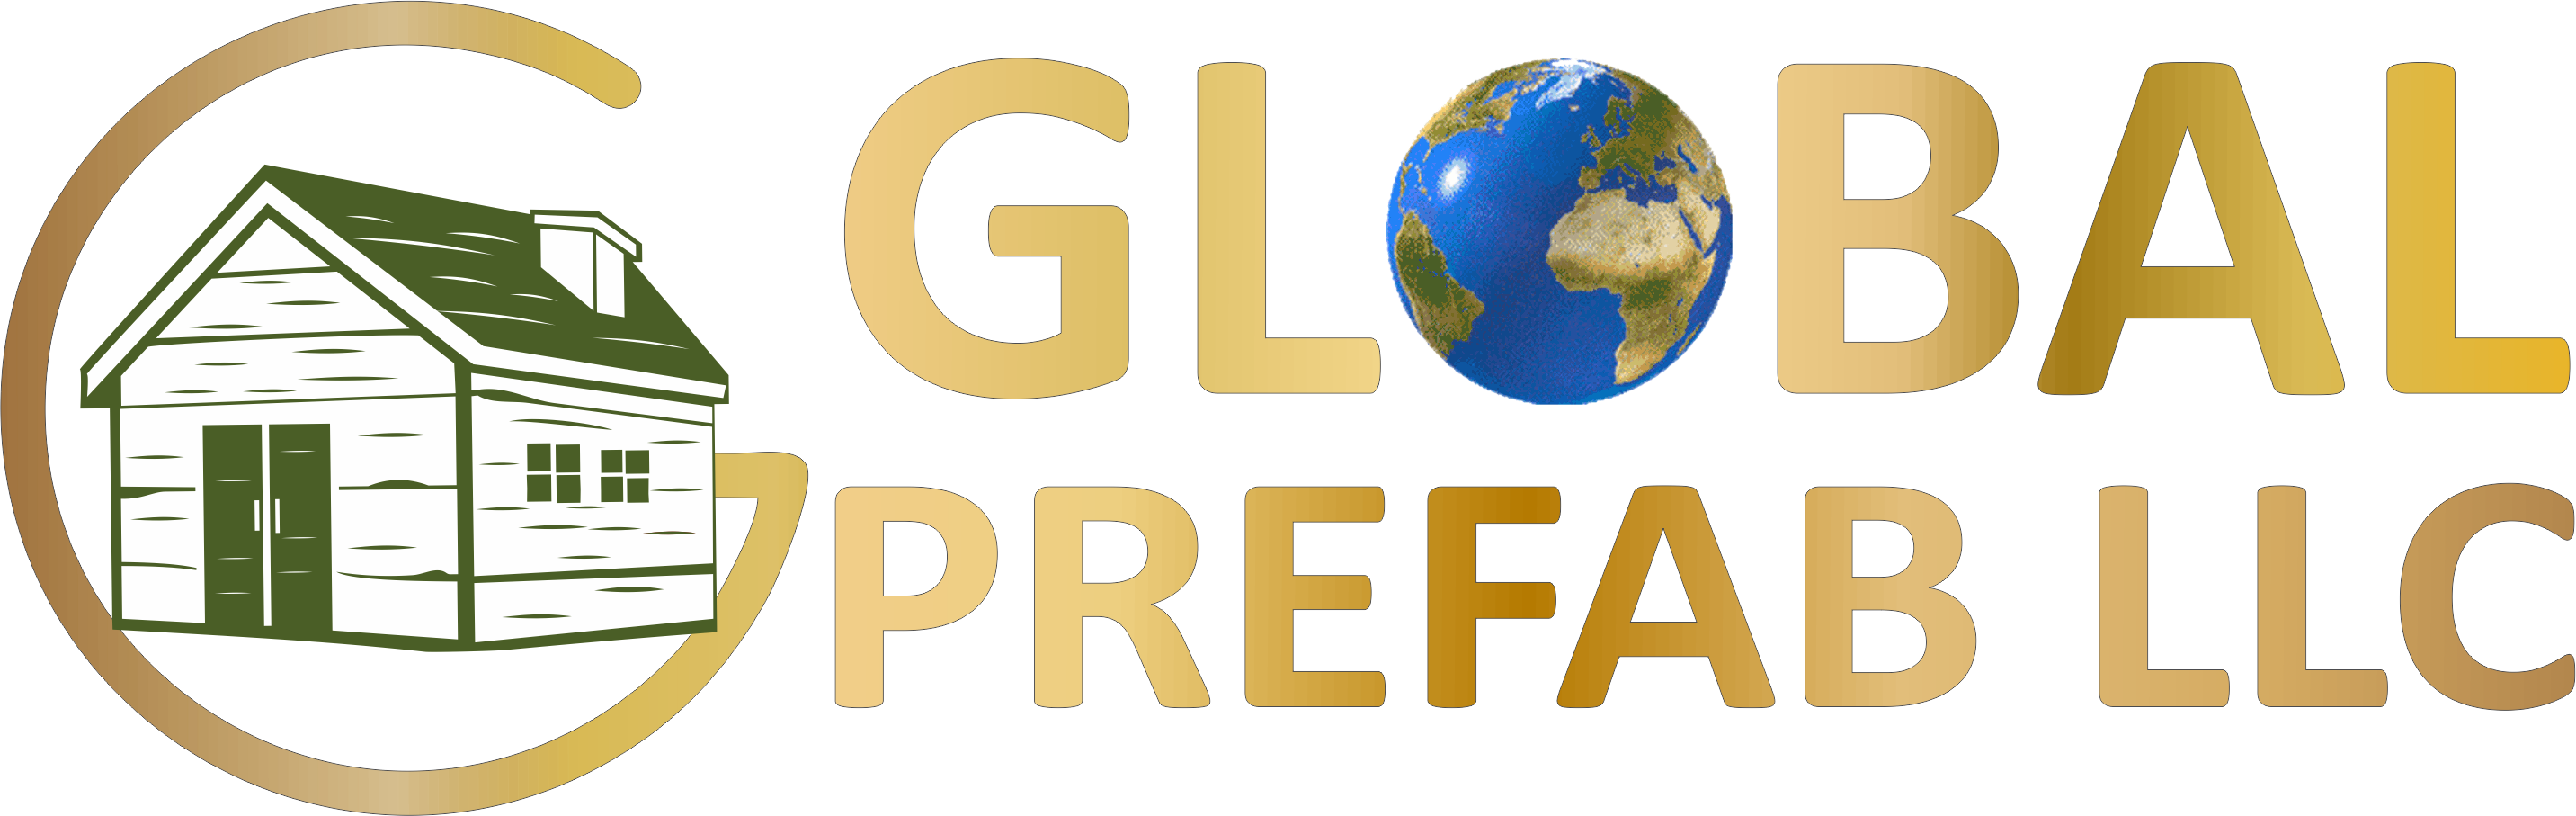 GLOBAL PREFAB LLC